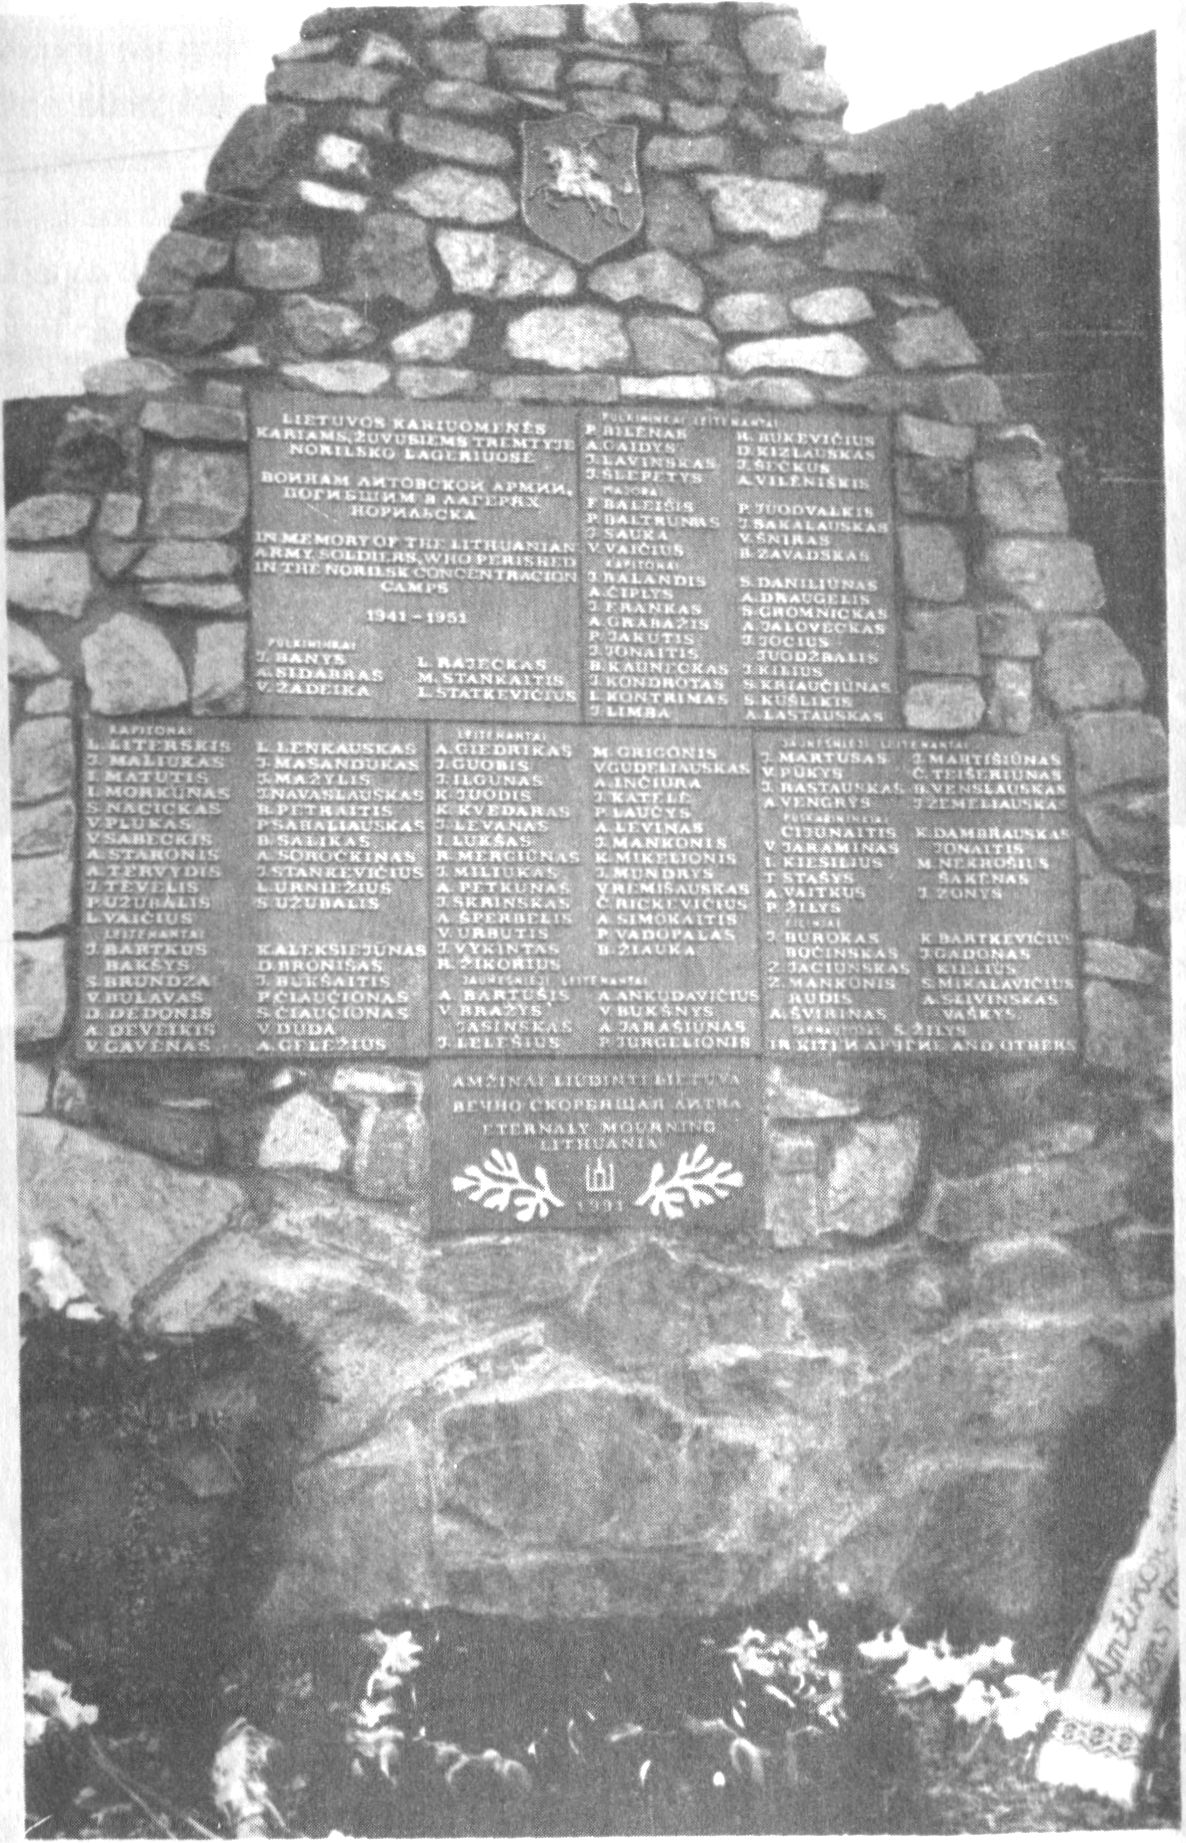  memorialinė paminklinė lenta